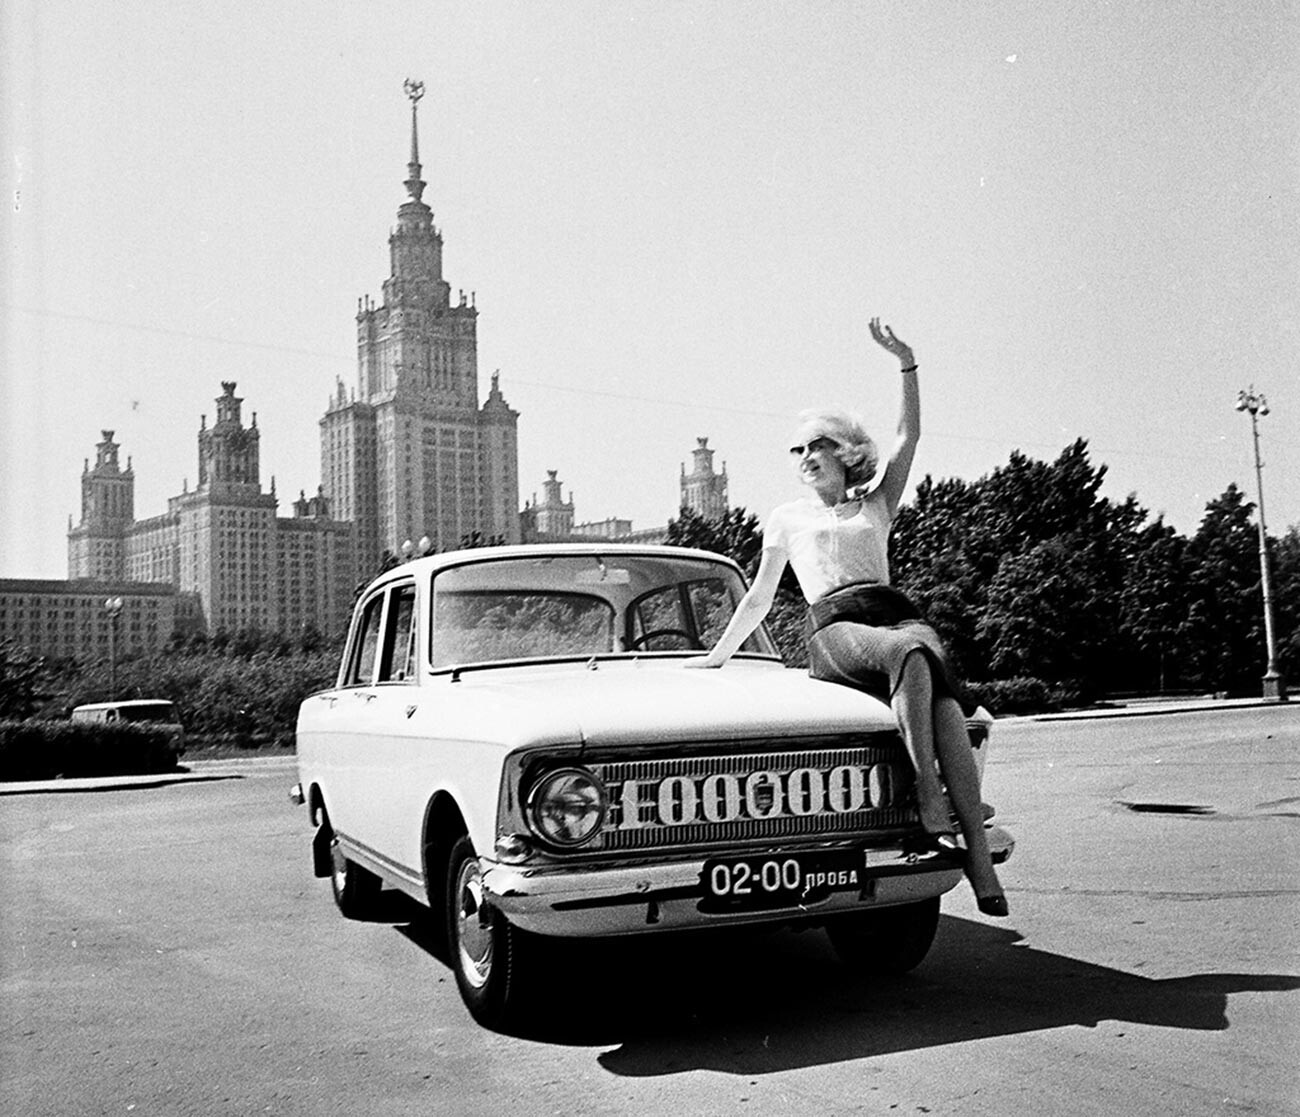 Il milionesimo esemplare della Moskvich 408 a Mosca. Sullo sfondo si riconosce l’edificio principale dell’Università Statale di Mosca, una delle “Sette Sorelle” di Stalin